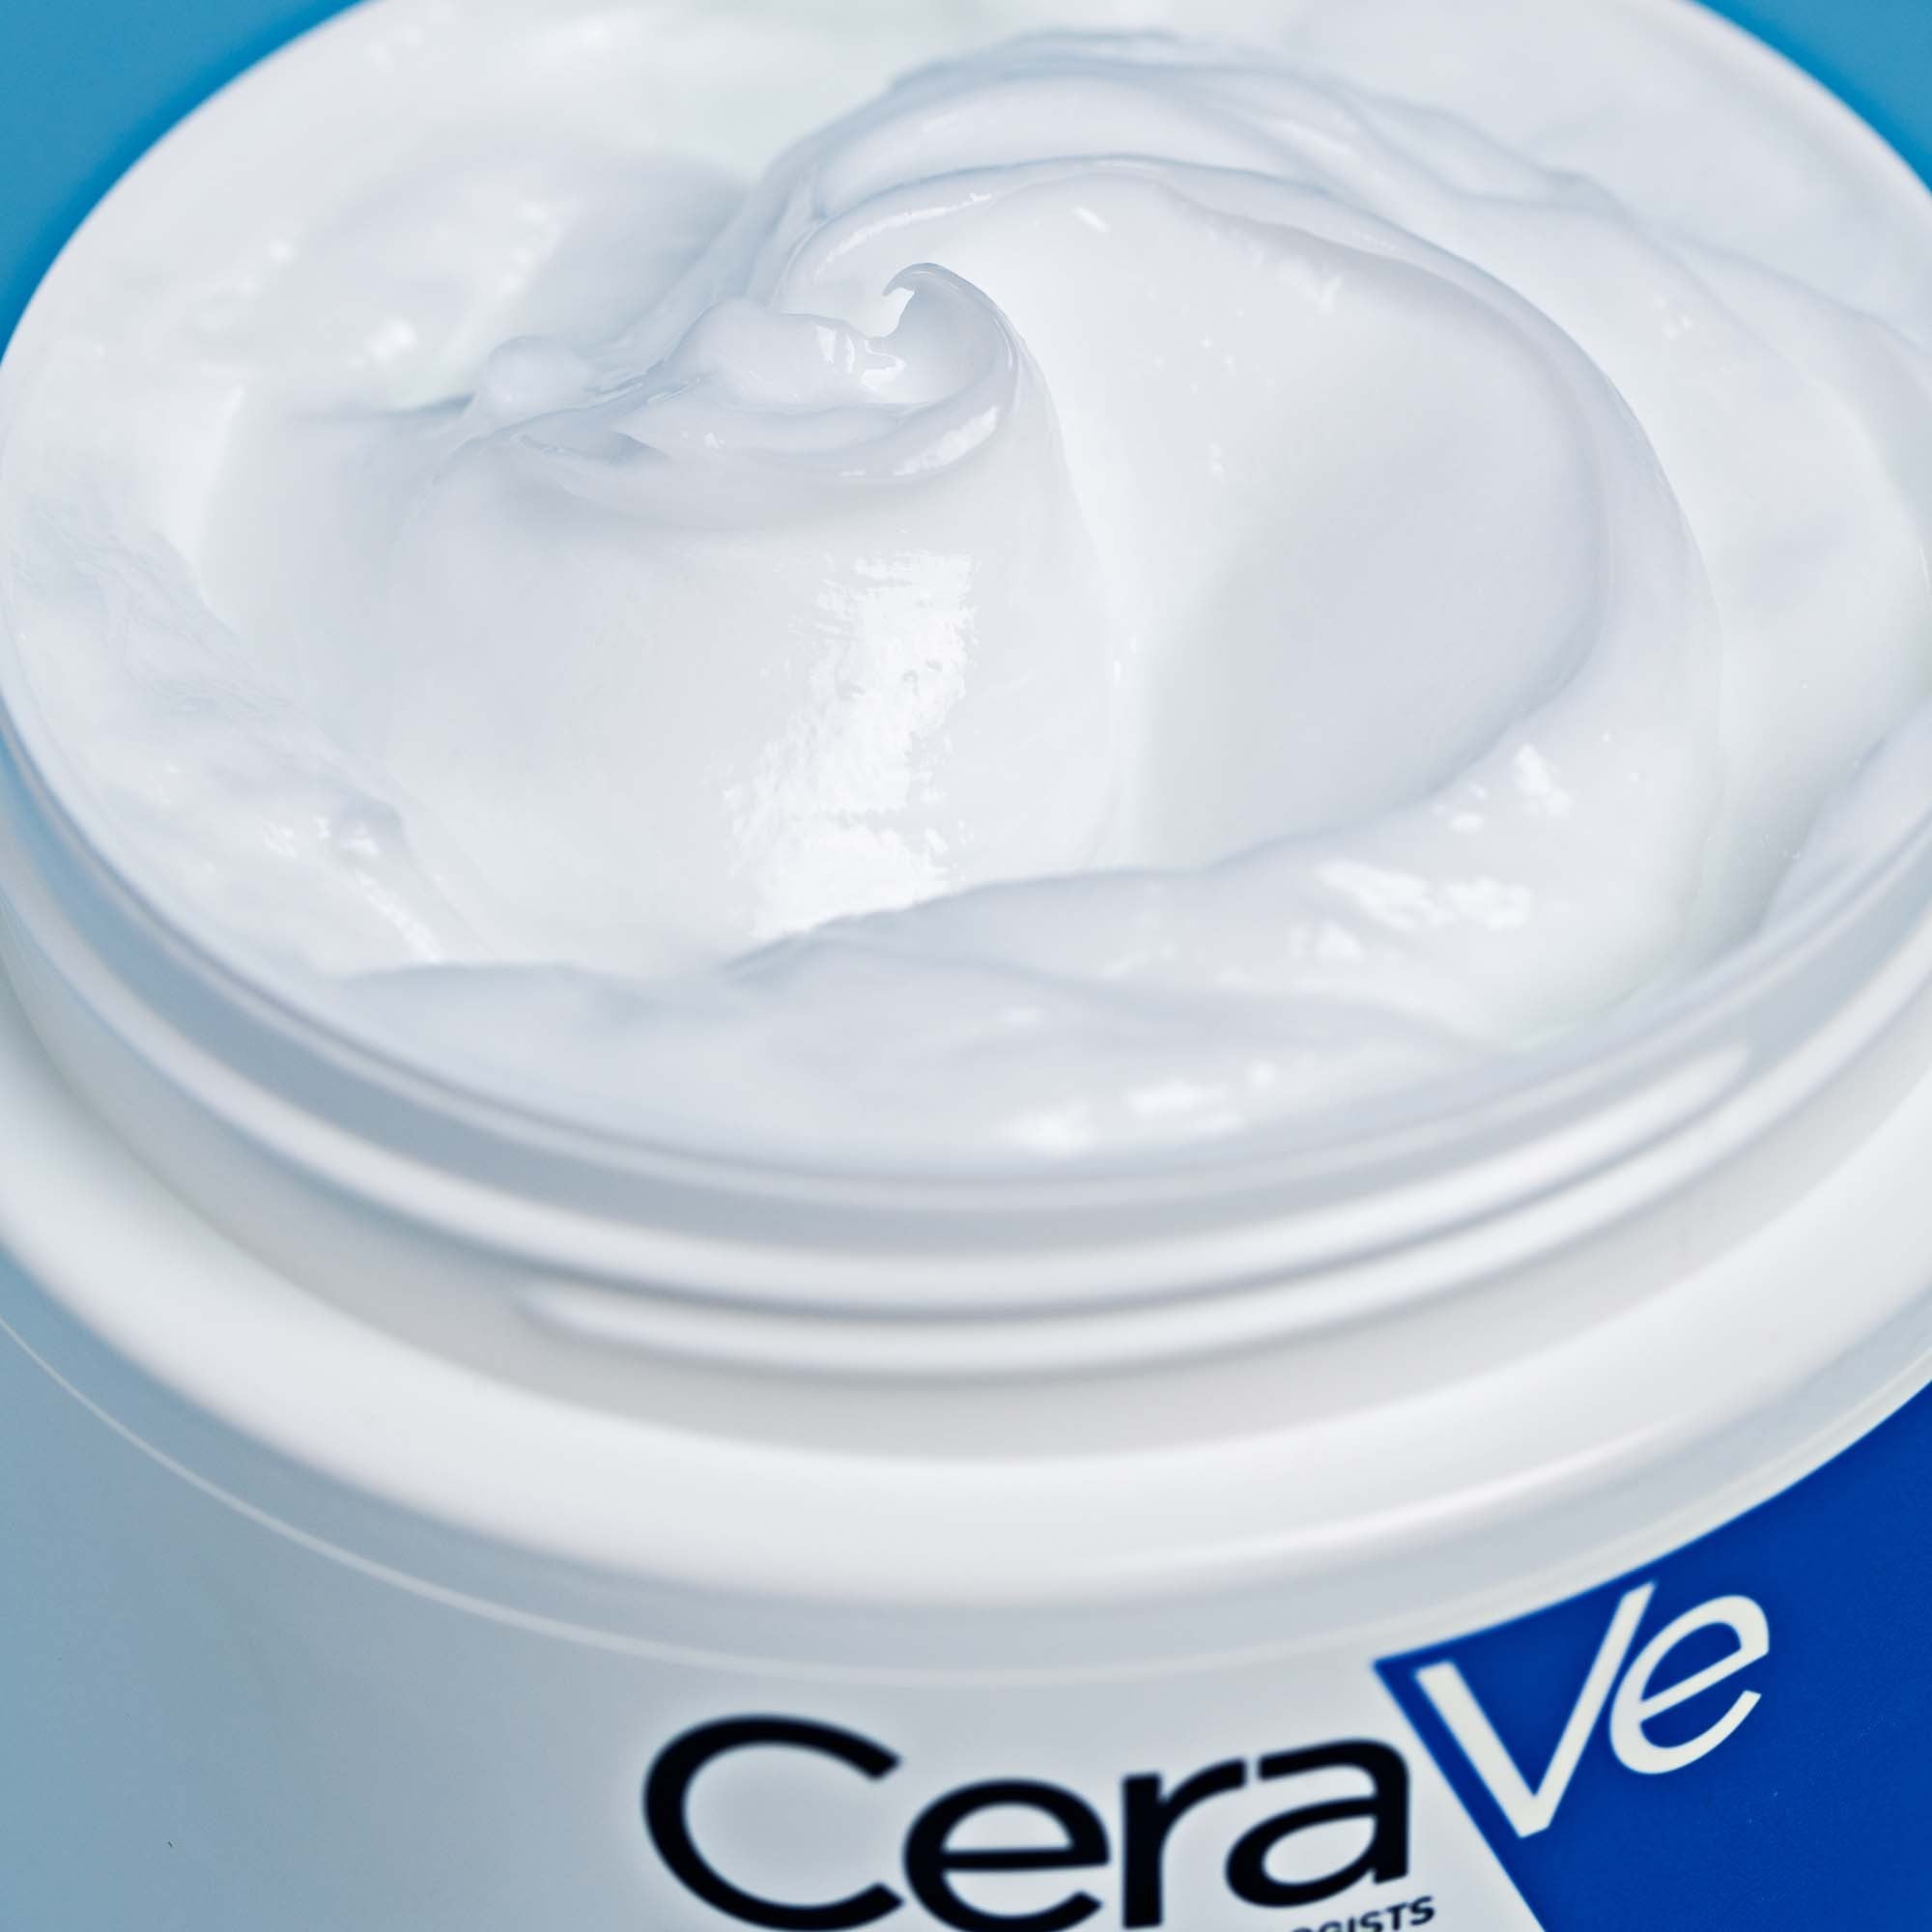 CeraVe Moisturising Cream close up of the cream